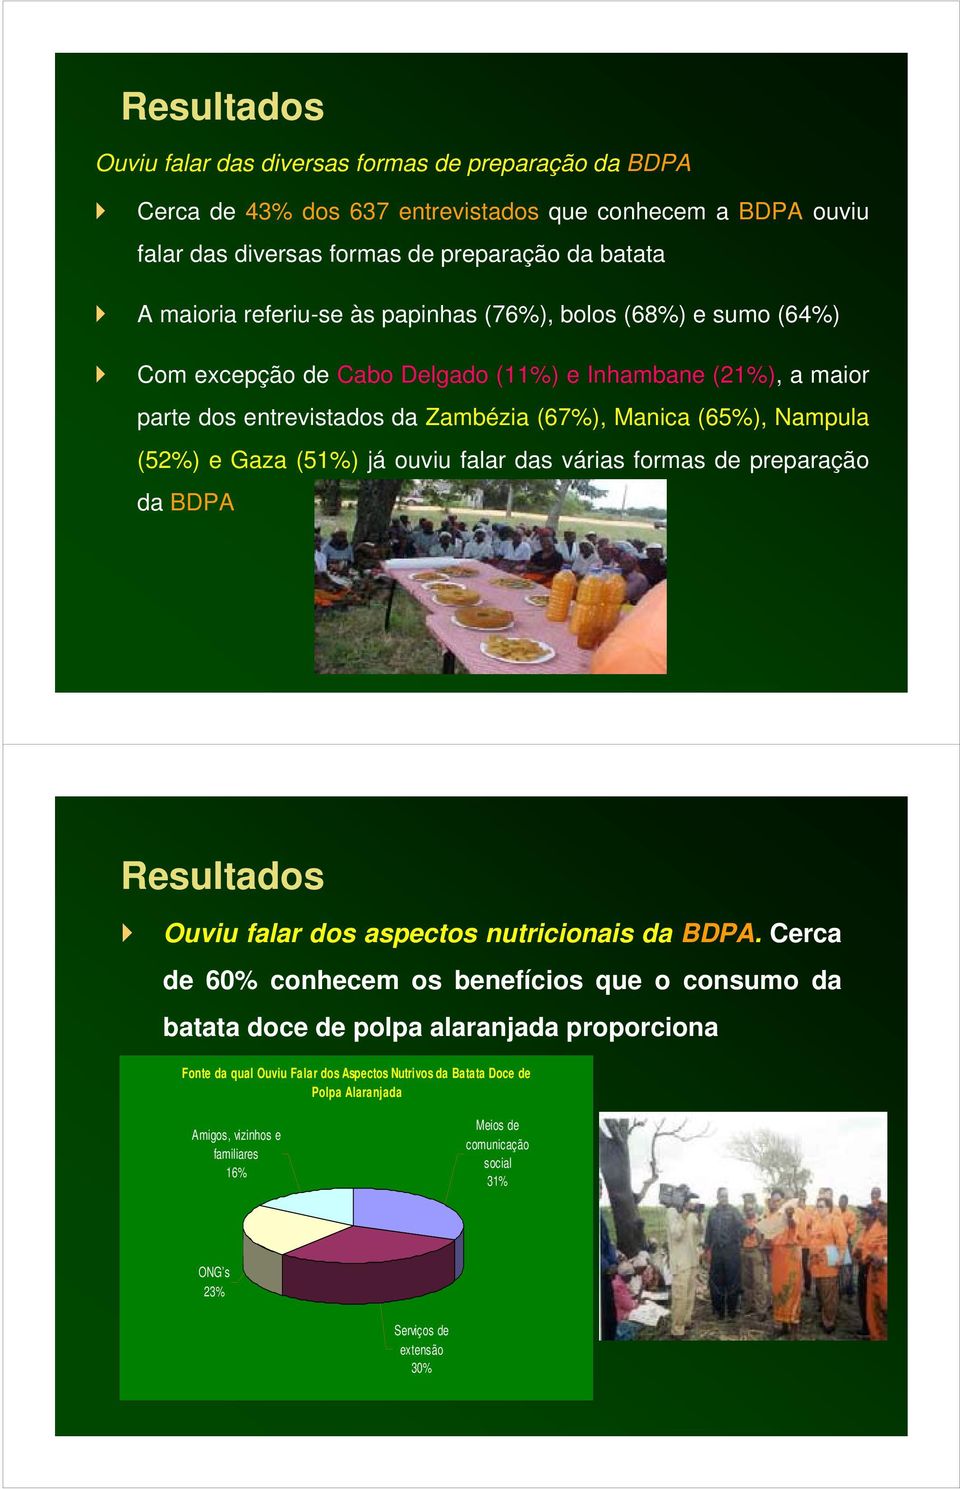 (51%) já ouviu falar das várias formas de preparação da BDPA Resultados Ouviu falar dos aspectos nutricionais da BDPA.